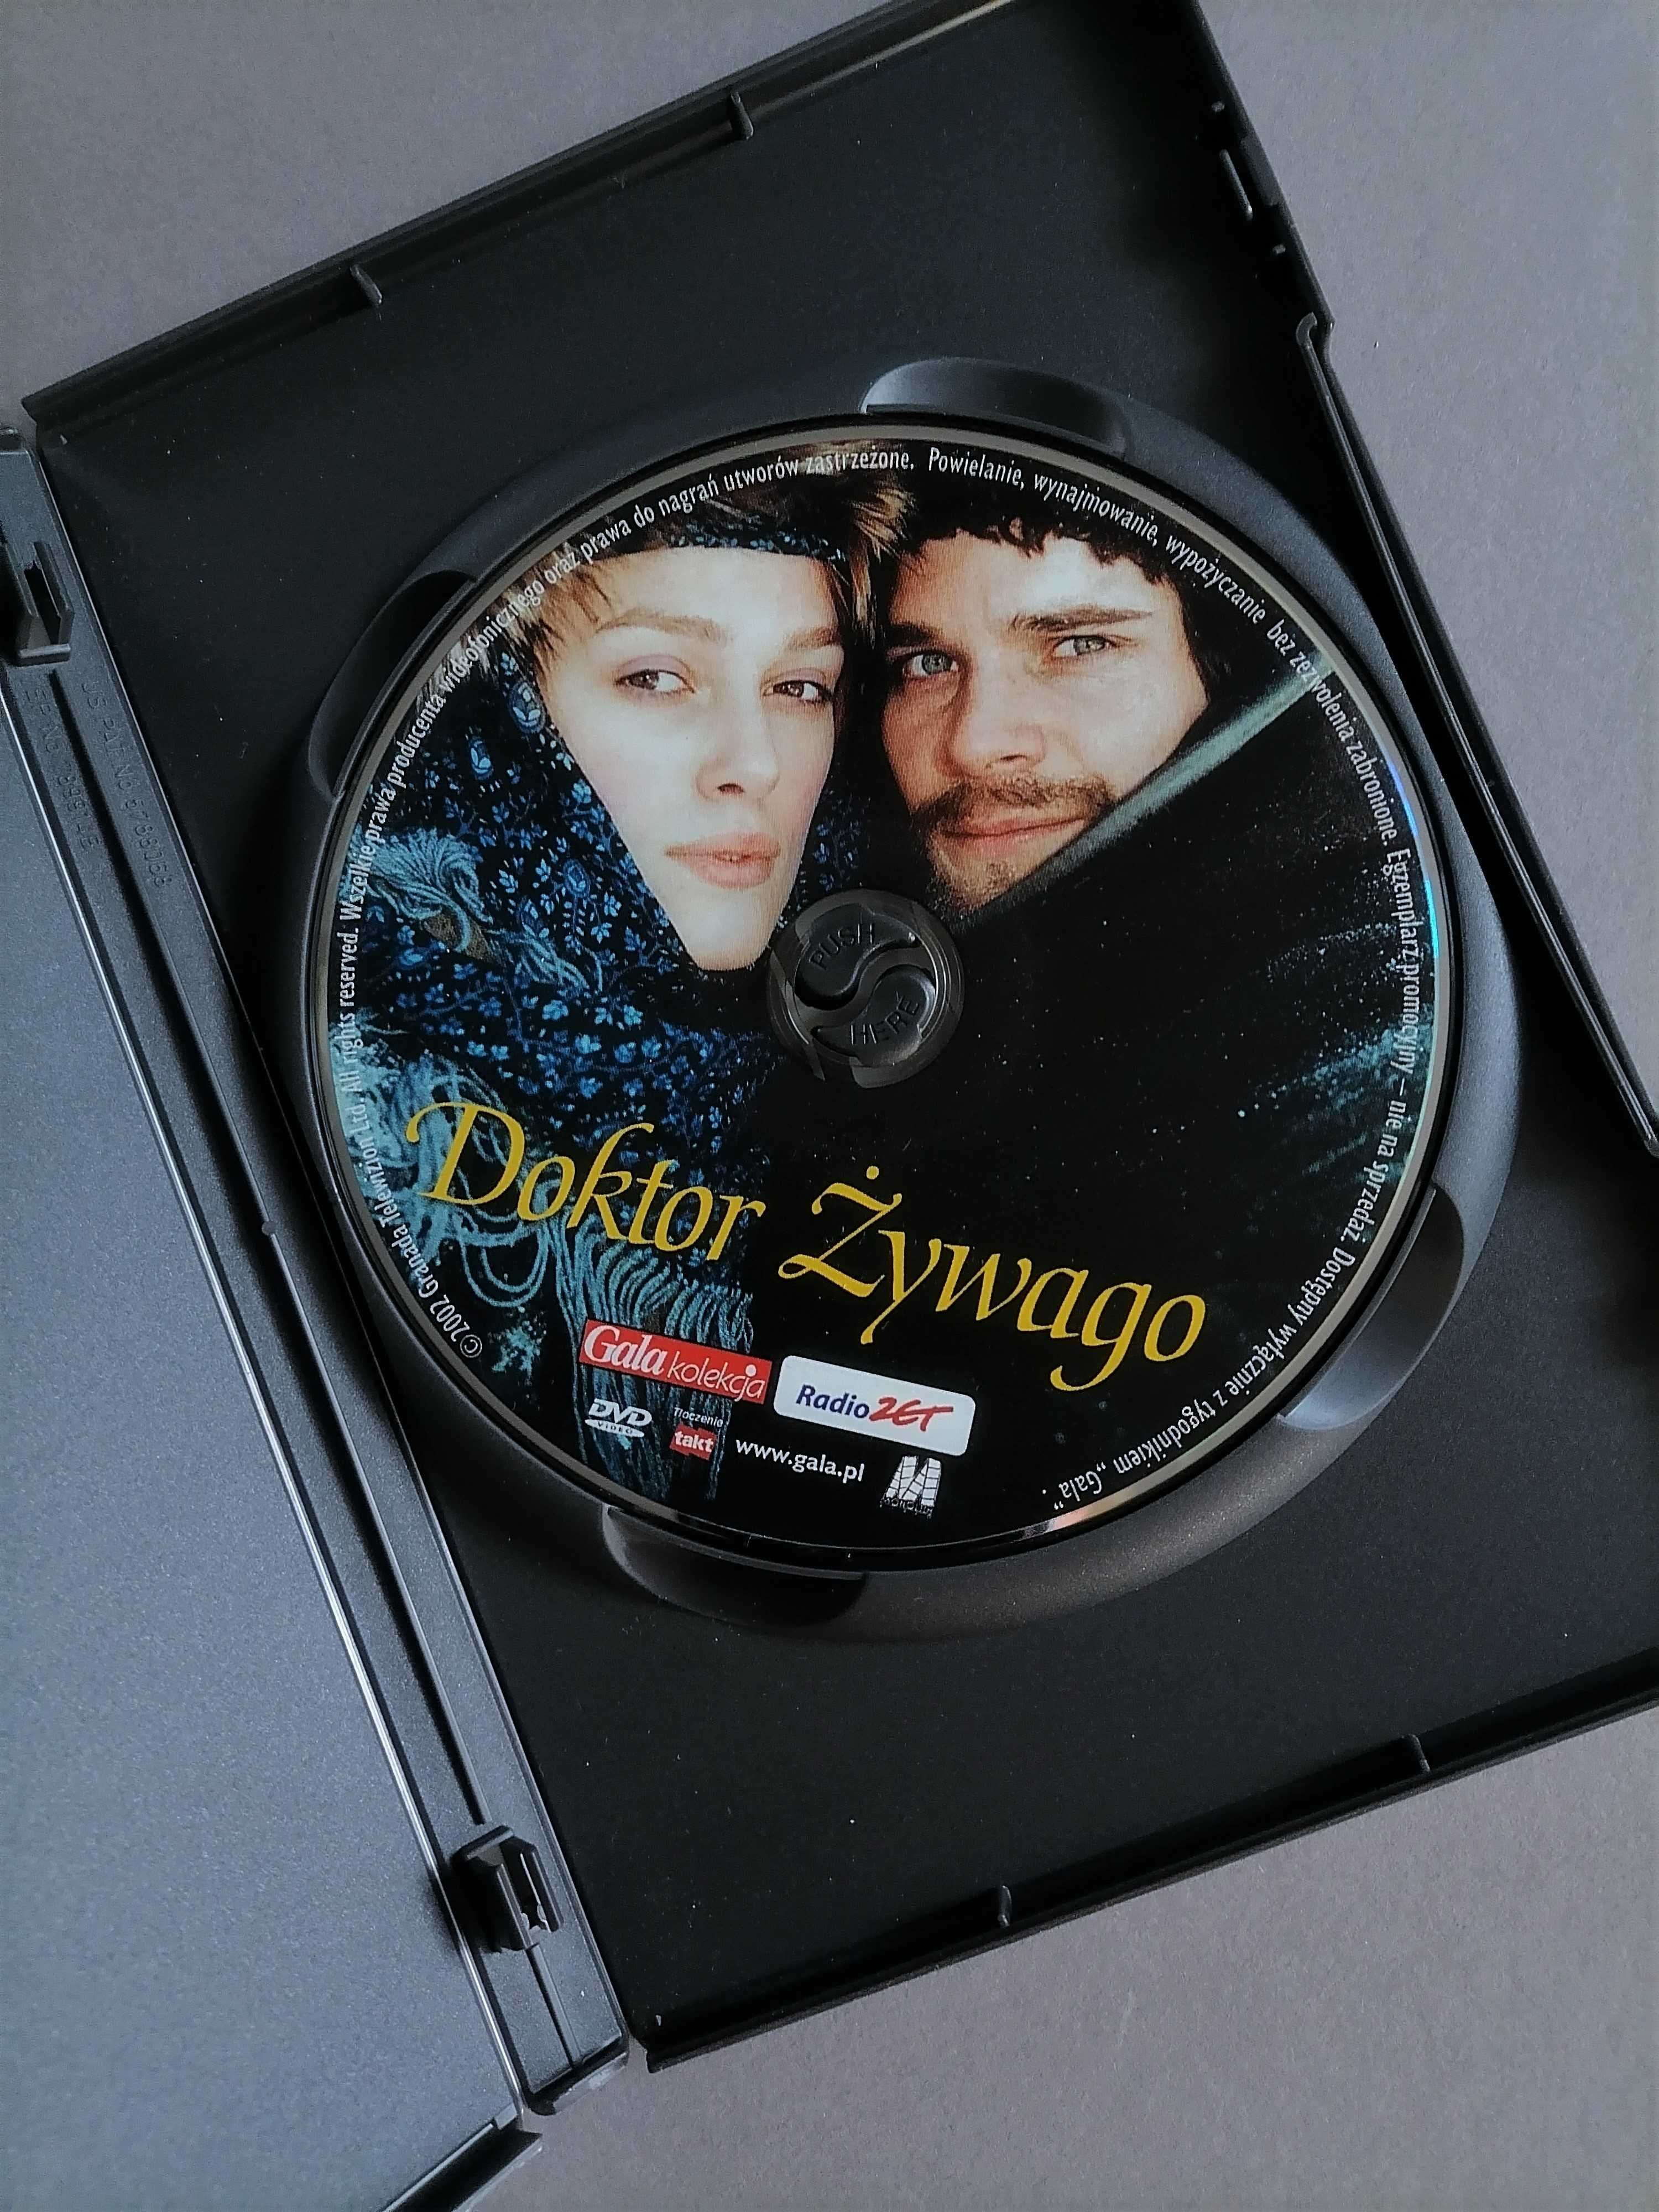 Doktor Żywago - DVD